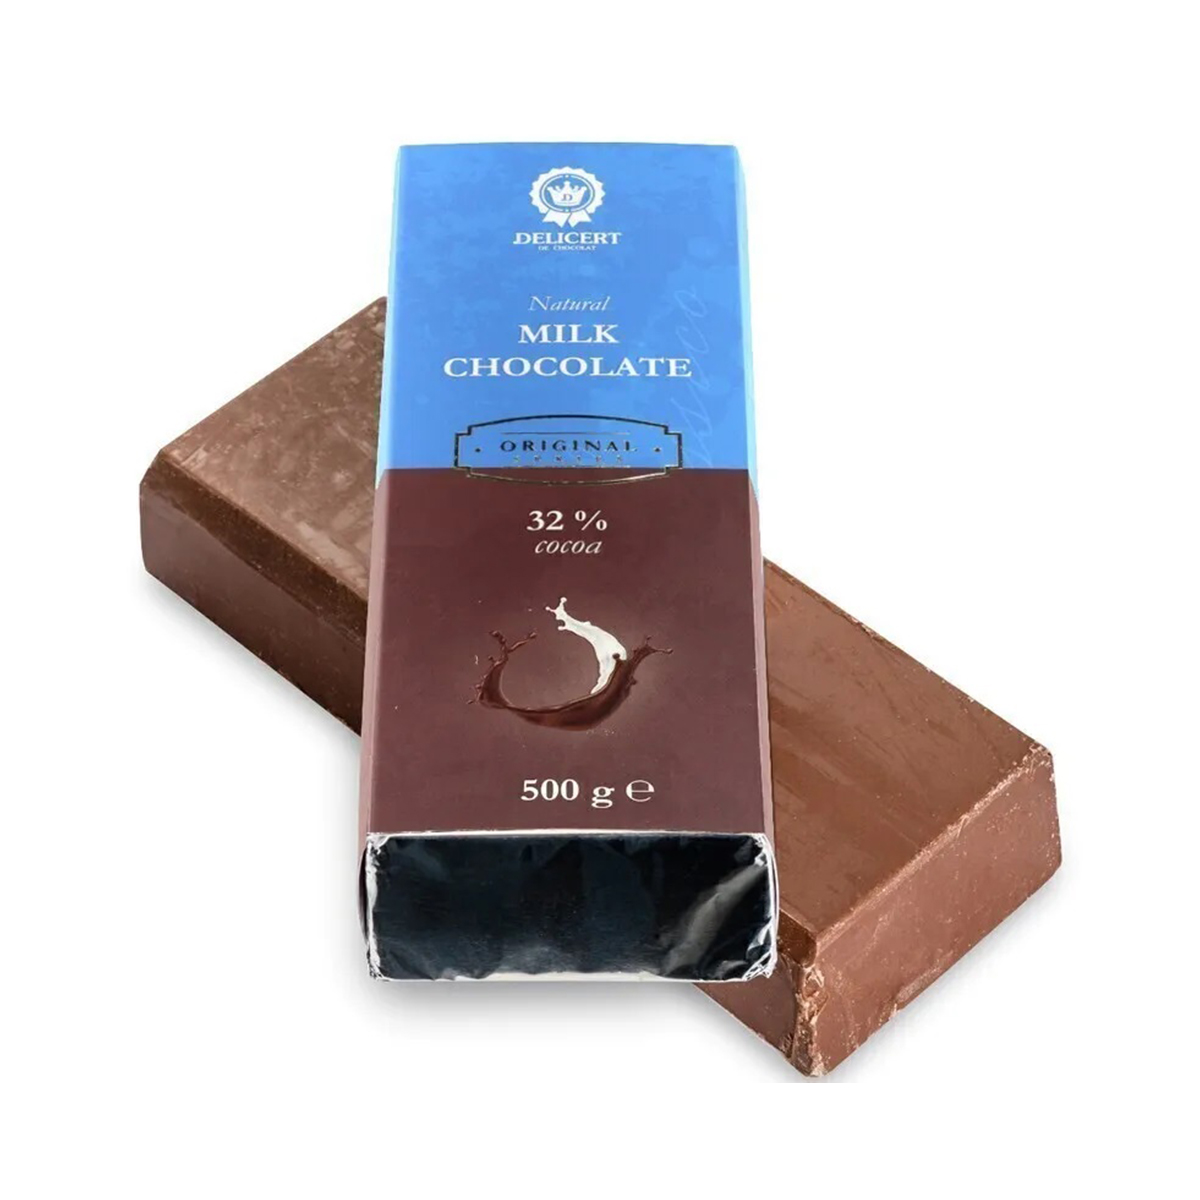 Шоколад 500 гр. Delicert шоколад. Шоколад Delicert молочный. Натуральный шоколад. Молочный шоколад плитка.